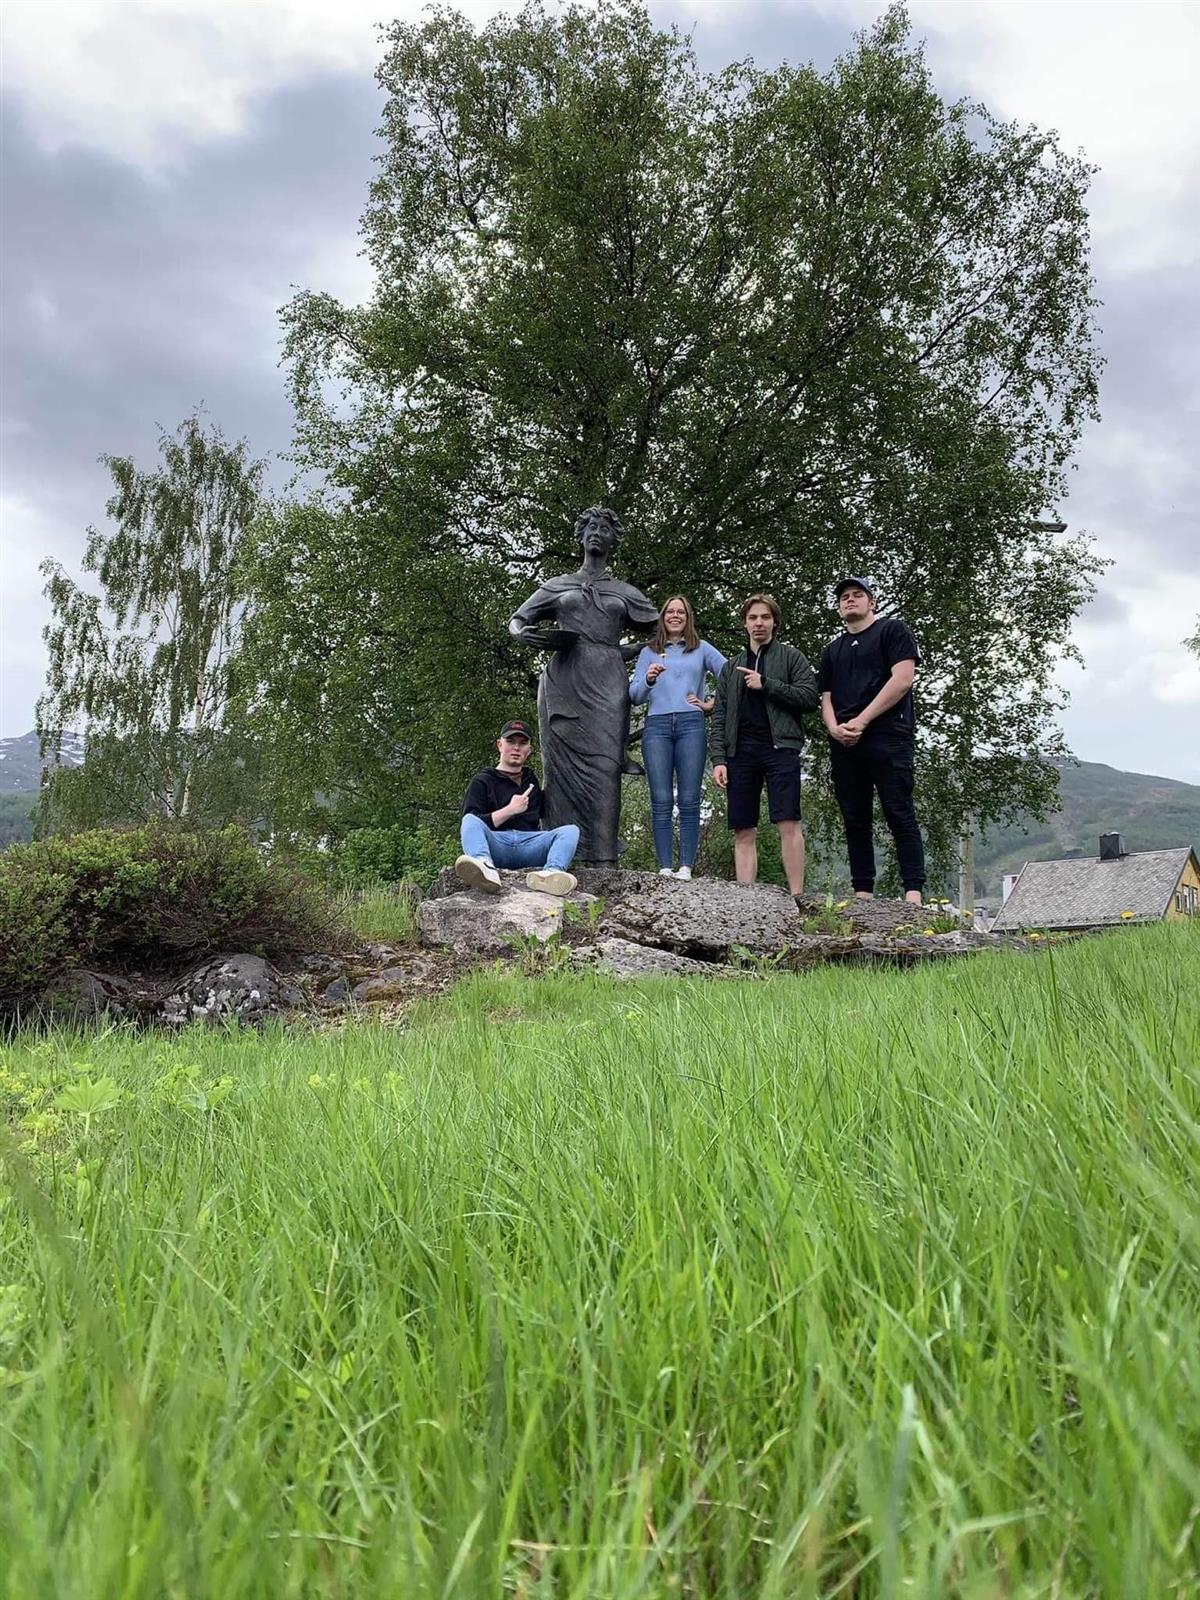 Fire elever poserer ved siden av statue i frodig natur i Narvik - Klikk for stort bilde